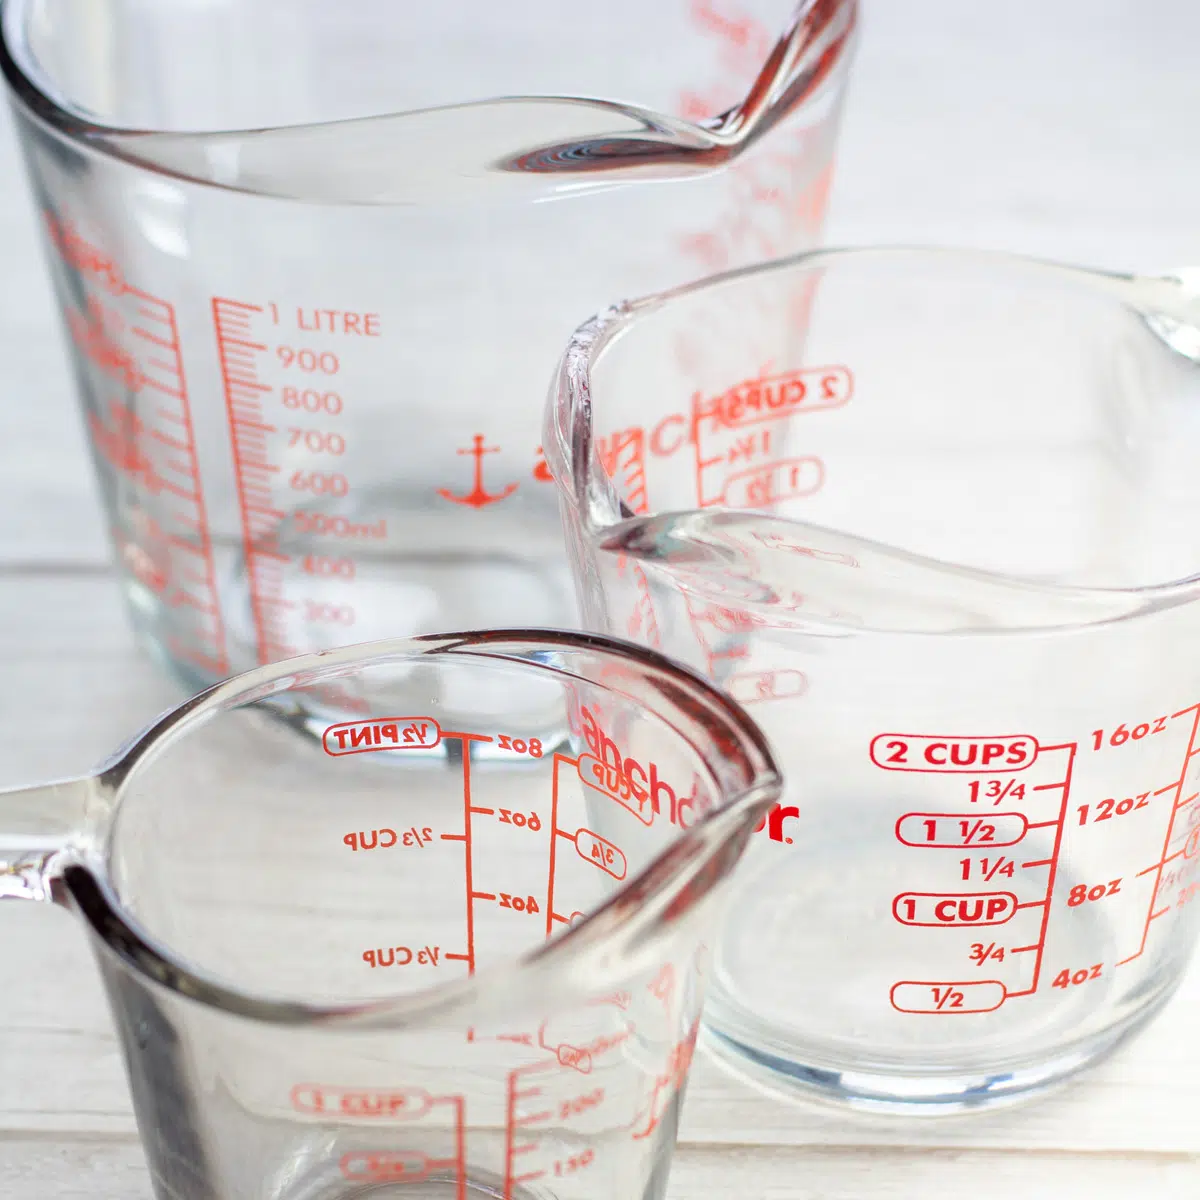 Несколько различных мерных чашек для определения количества чашек в галлонах.